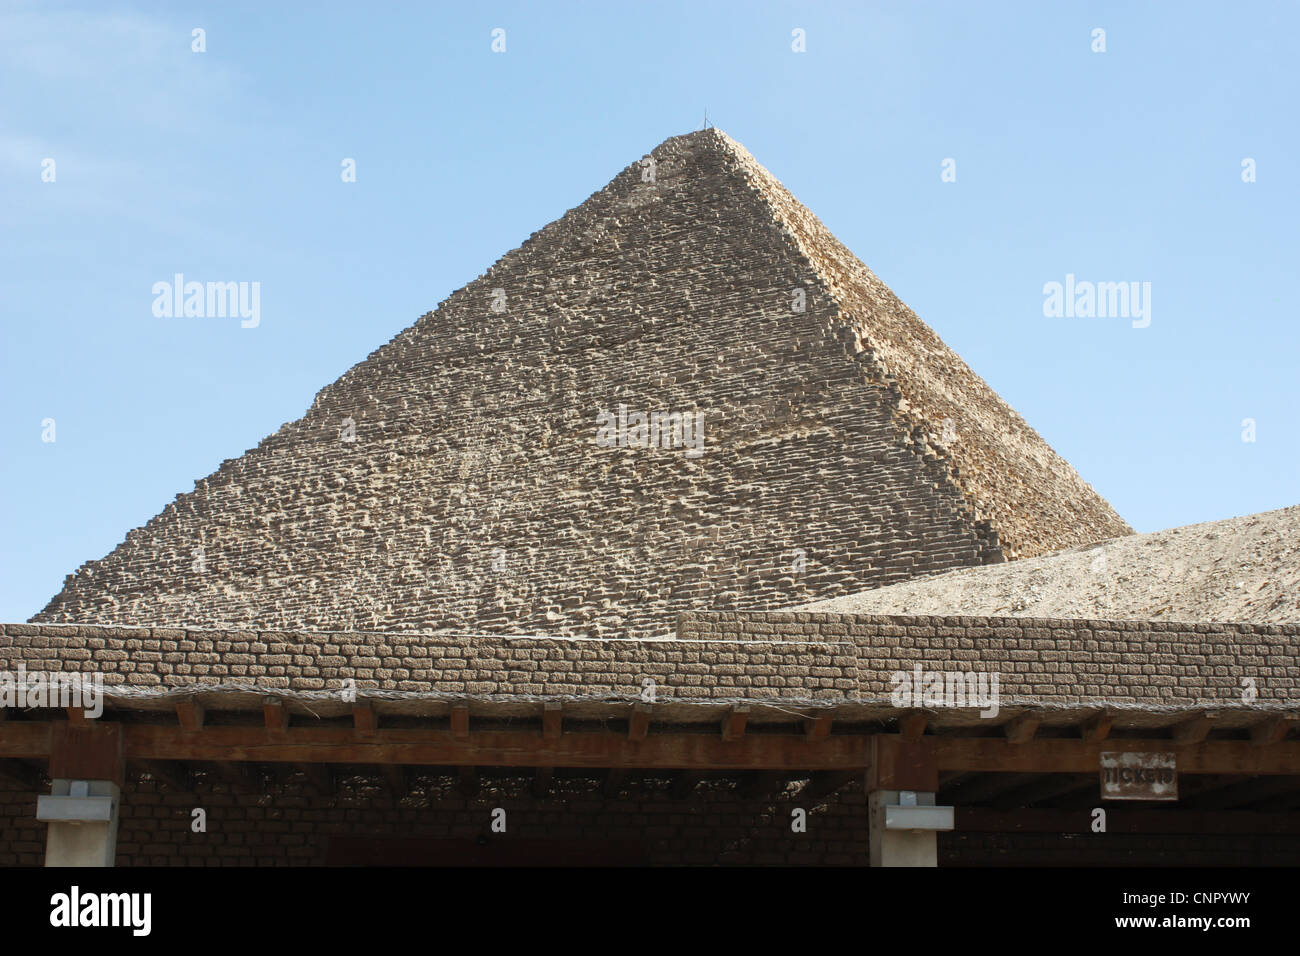 Pyramide des Cheops in Giza, die größte ägyptische Pyramide Stockfoto